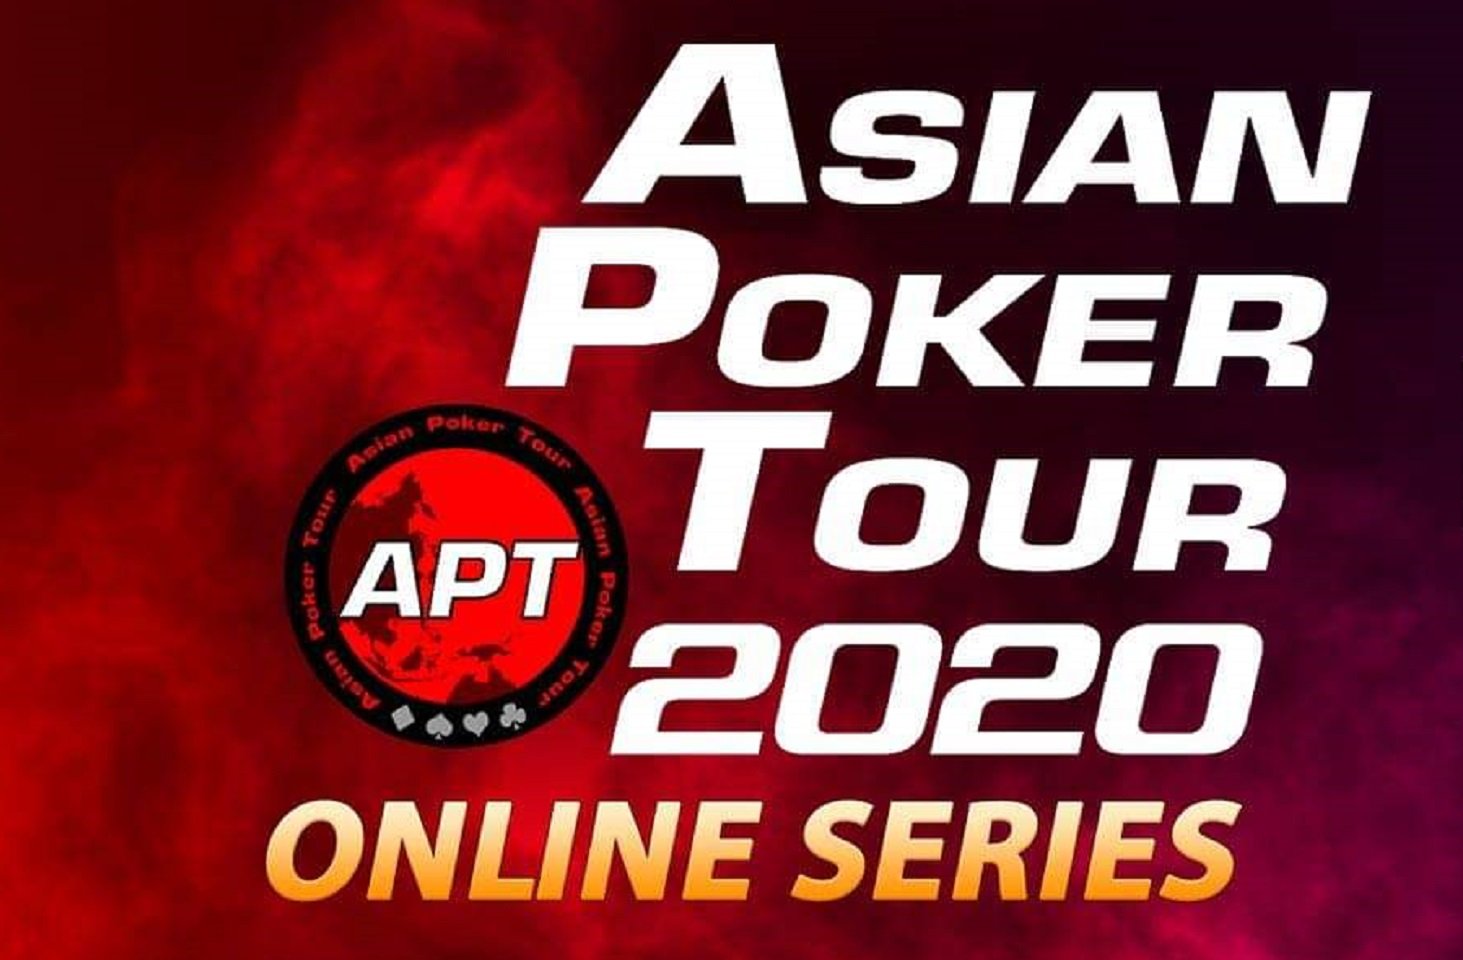 APT Online Series 2020 2nd Edition - Full Schedule